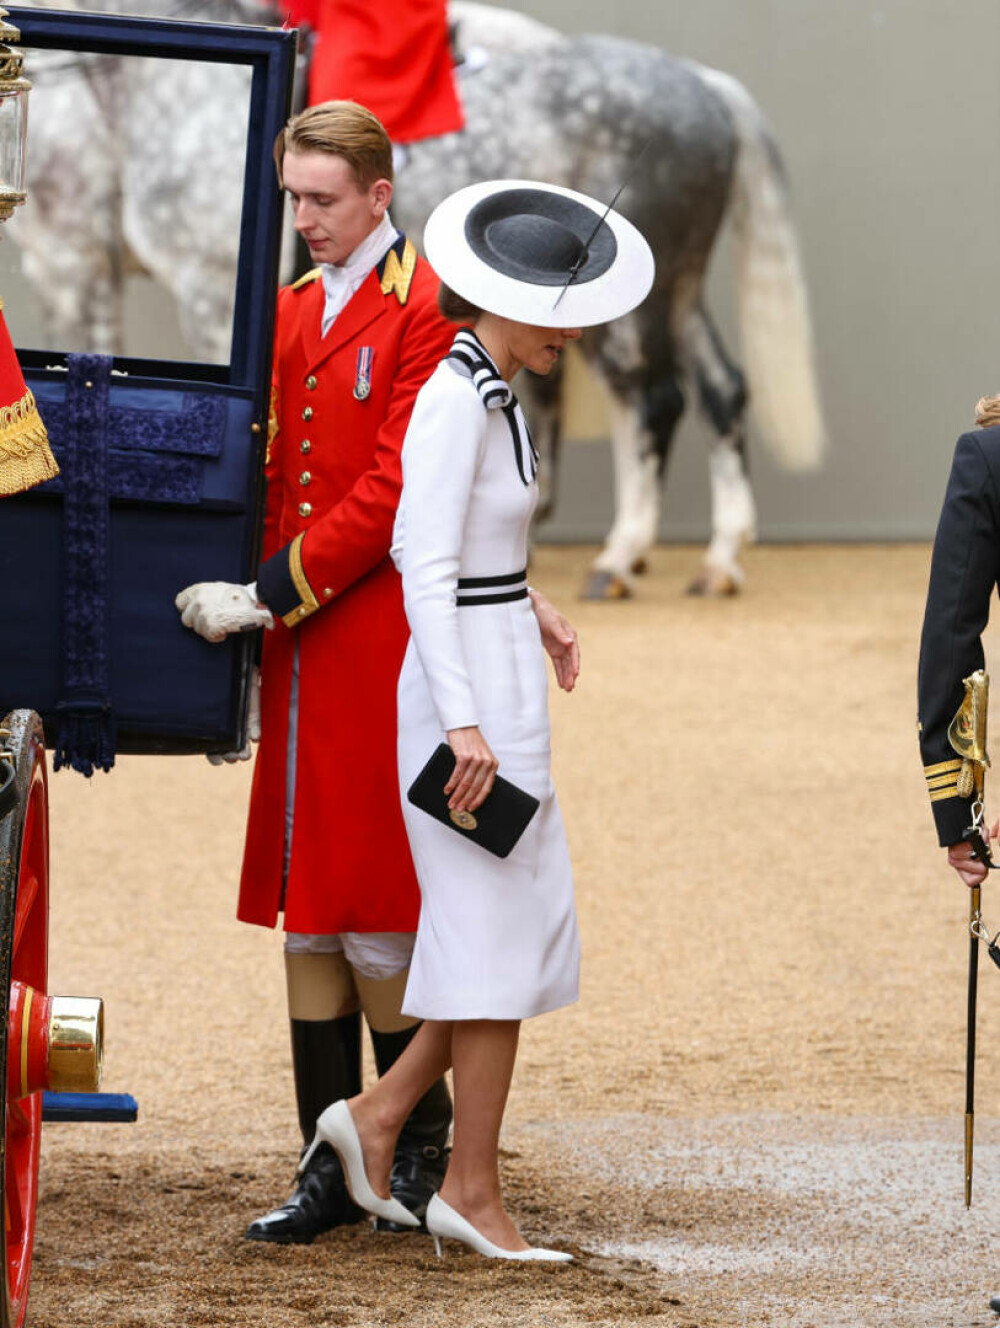 Detalii nevăzute de la prima apariție a prințesei Kate. Ce reprezintă ținuta pe care a purtat-o | FOTO - Imaginea 17